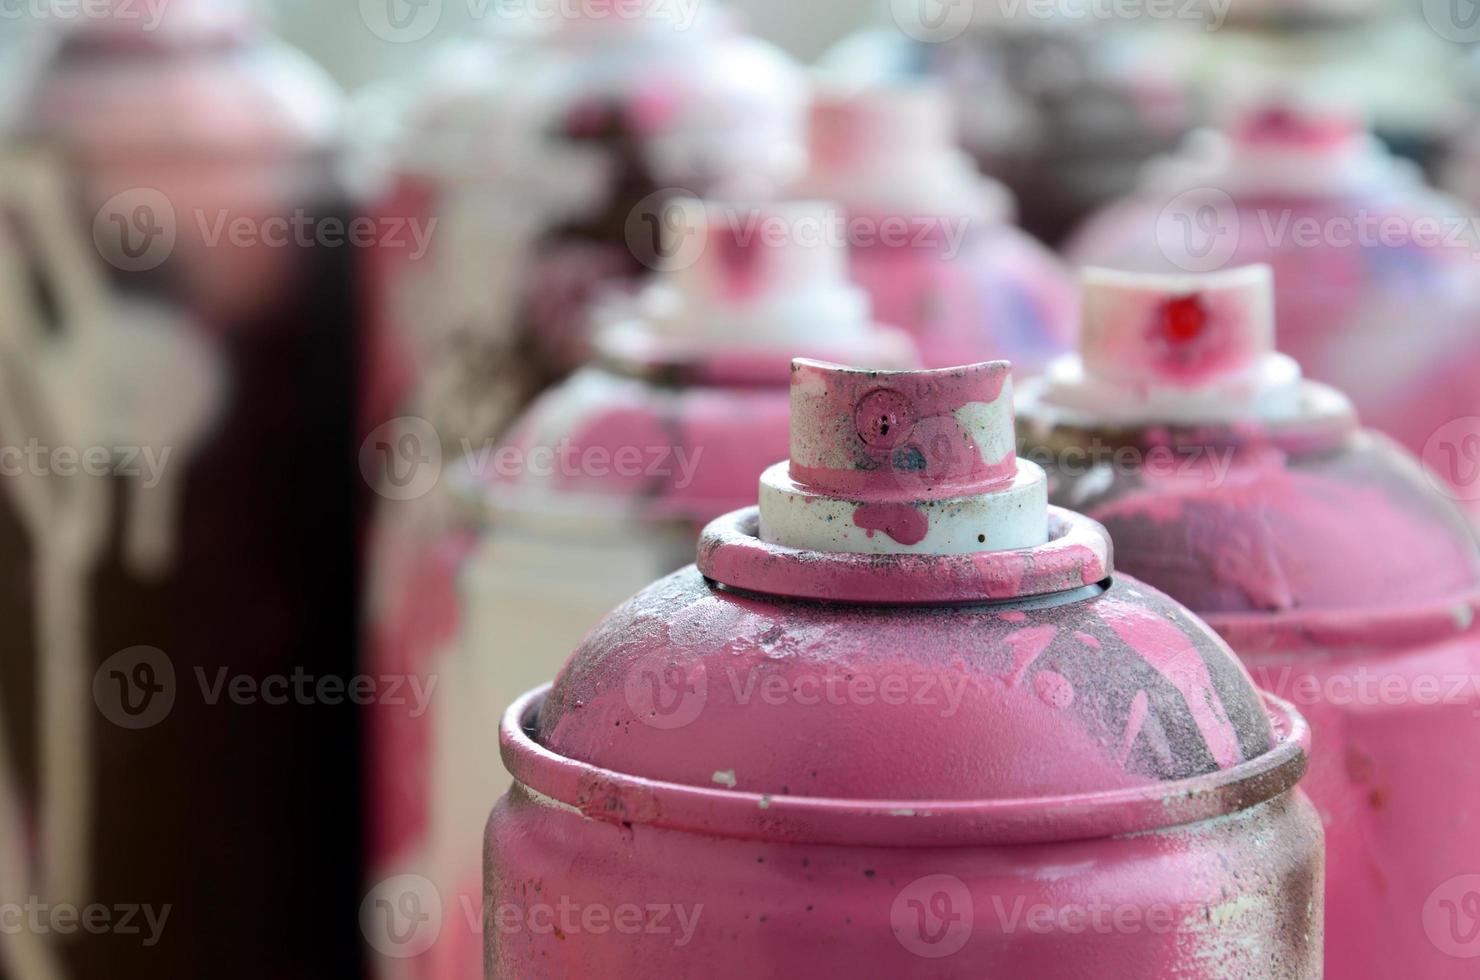 muchas latas de aerosol sucias y usadas de pintura rosa brillante. fotografía macro con poca profundidad de campo. enfoque selectivo en la boquilla de pulverización foto